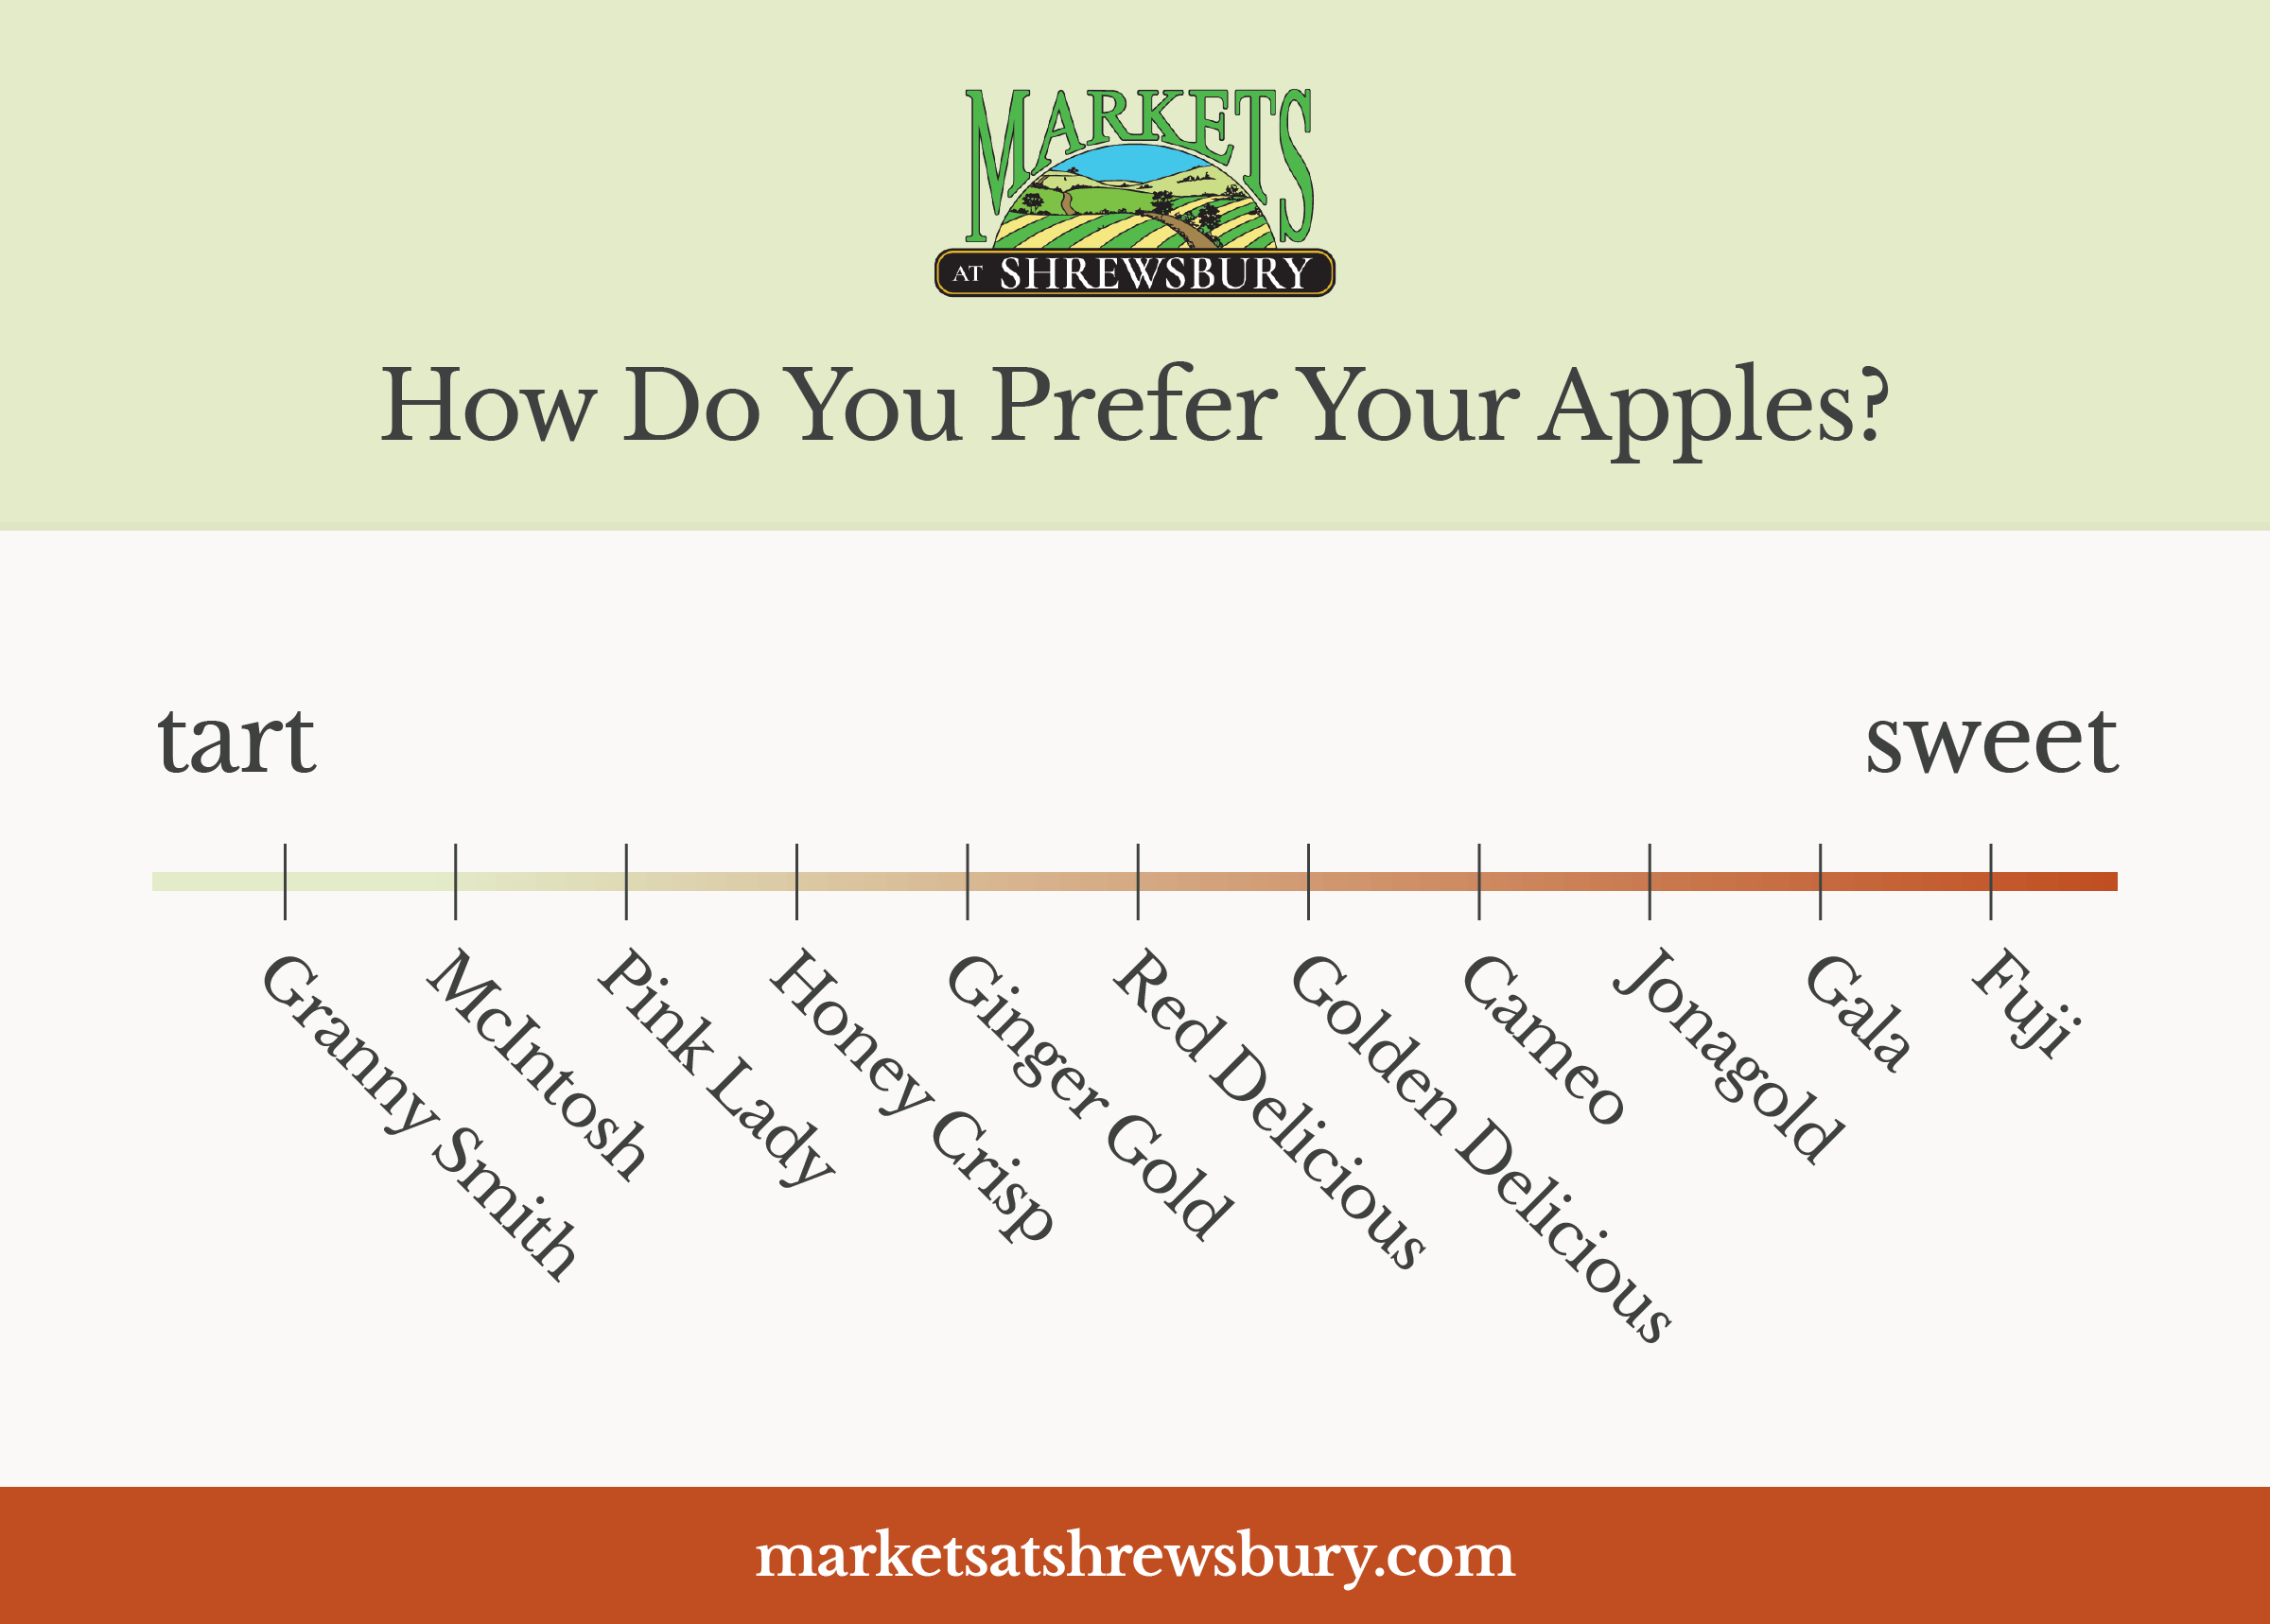 Chart Organizing Types of apples from sweet taste to tart taste